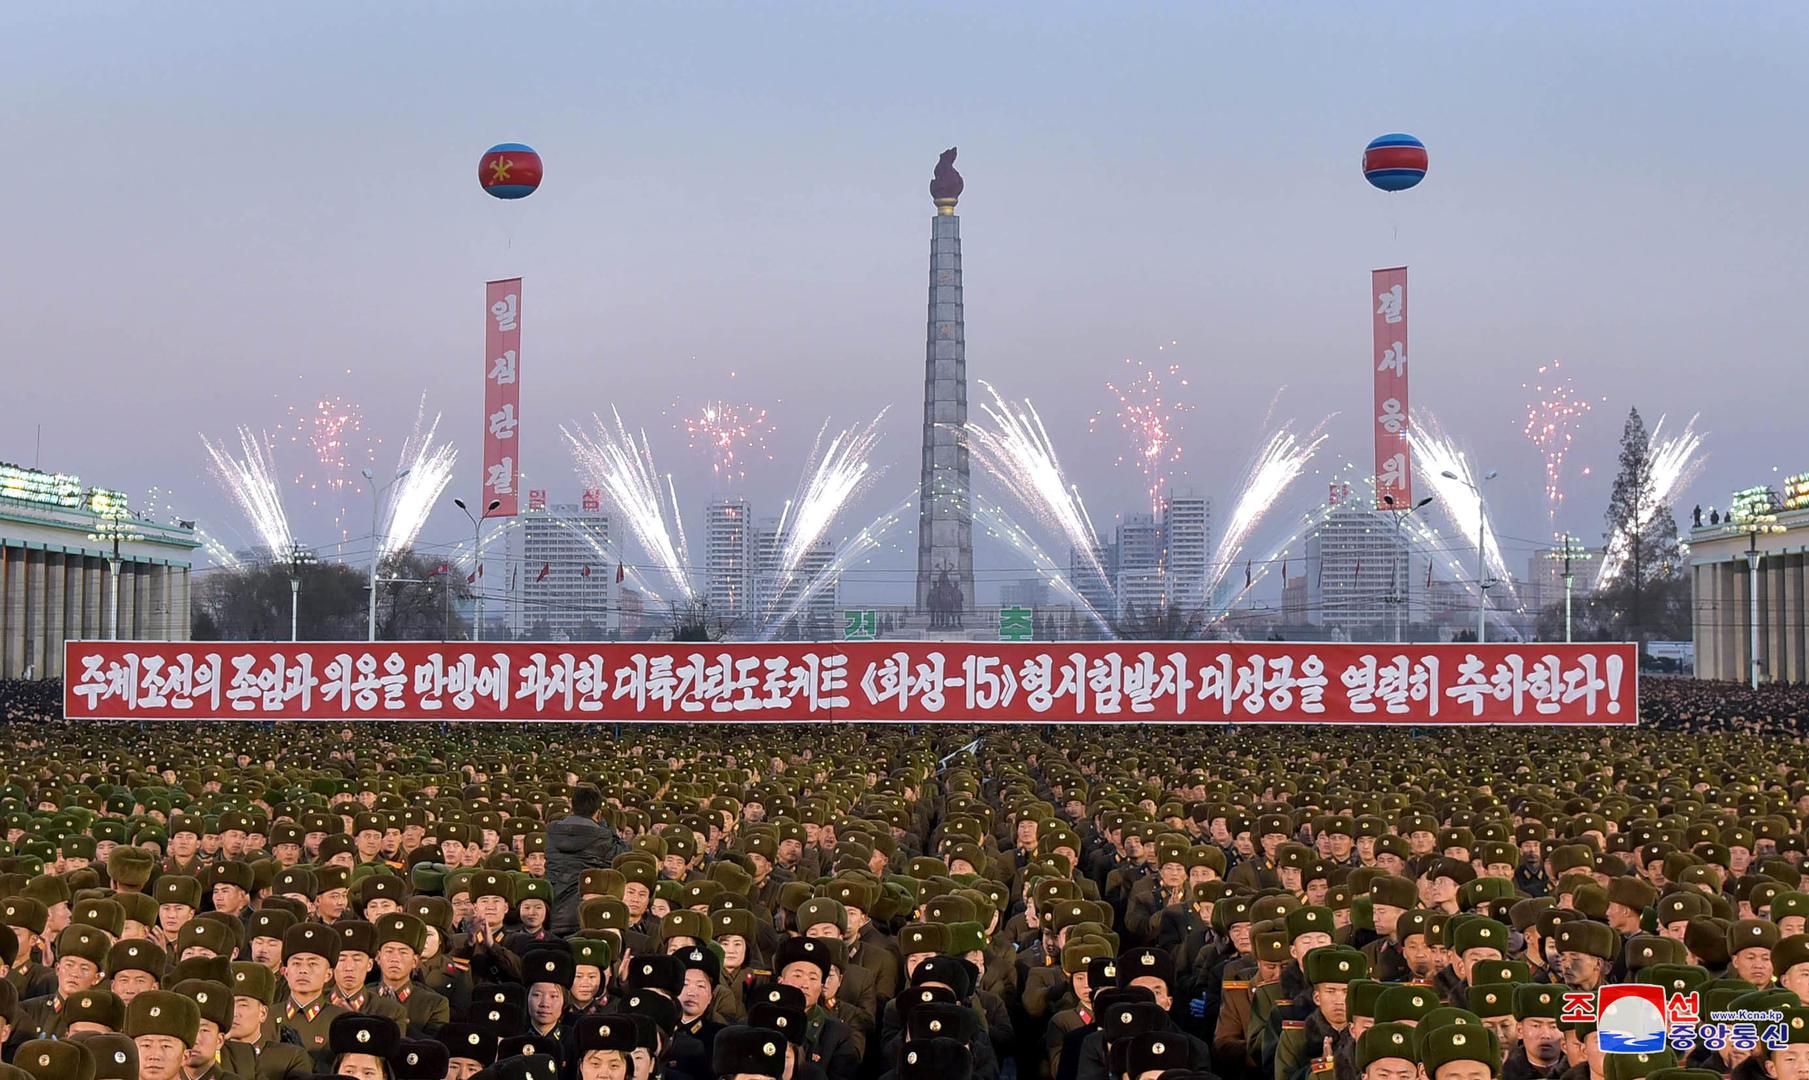 Sjeverna Koreja proslavila je u petak najnovije ispaljivanje interkontinentalne rakete uz vatromet i koreografije na javnim trgovima, izvješćuje u subotu službeni sjevernokorejski medij.

